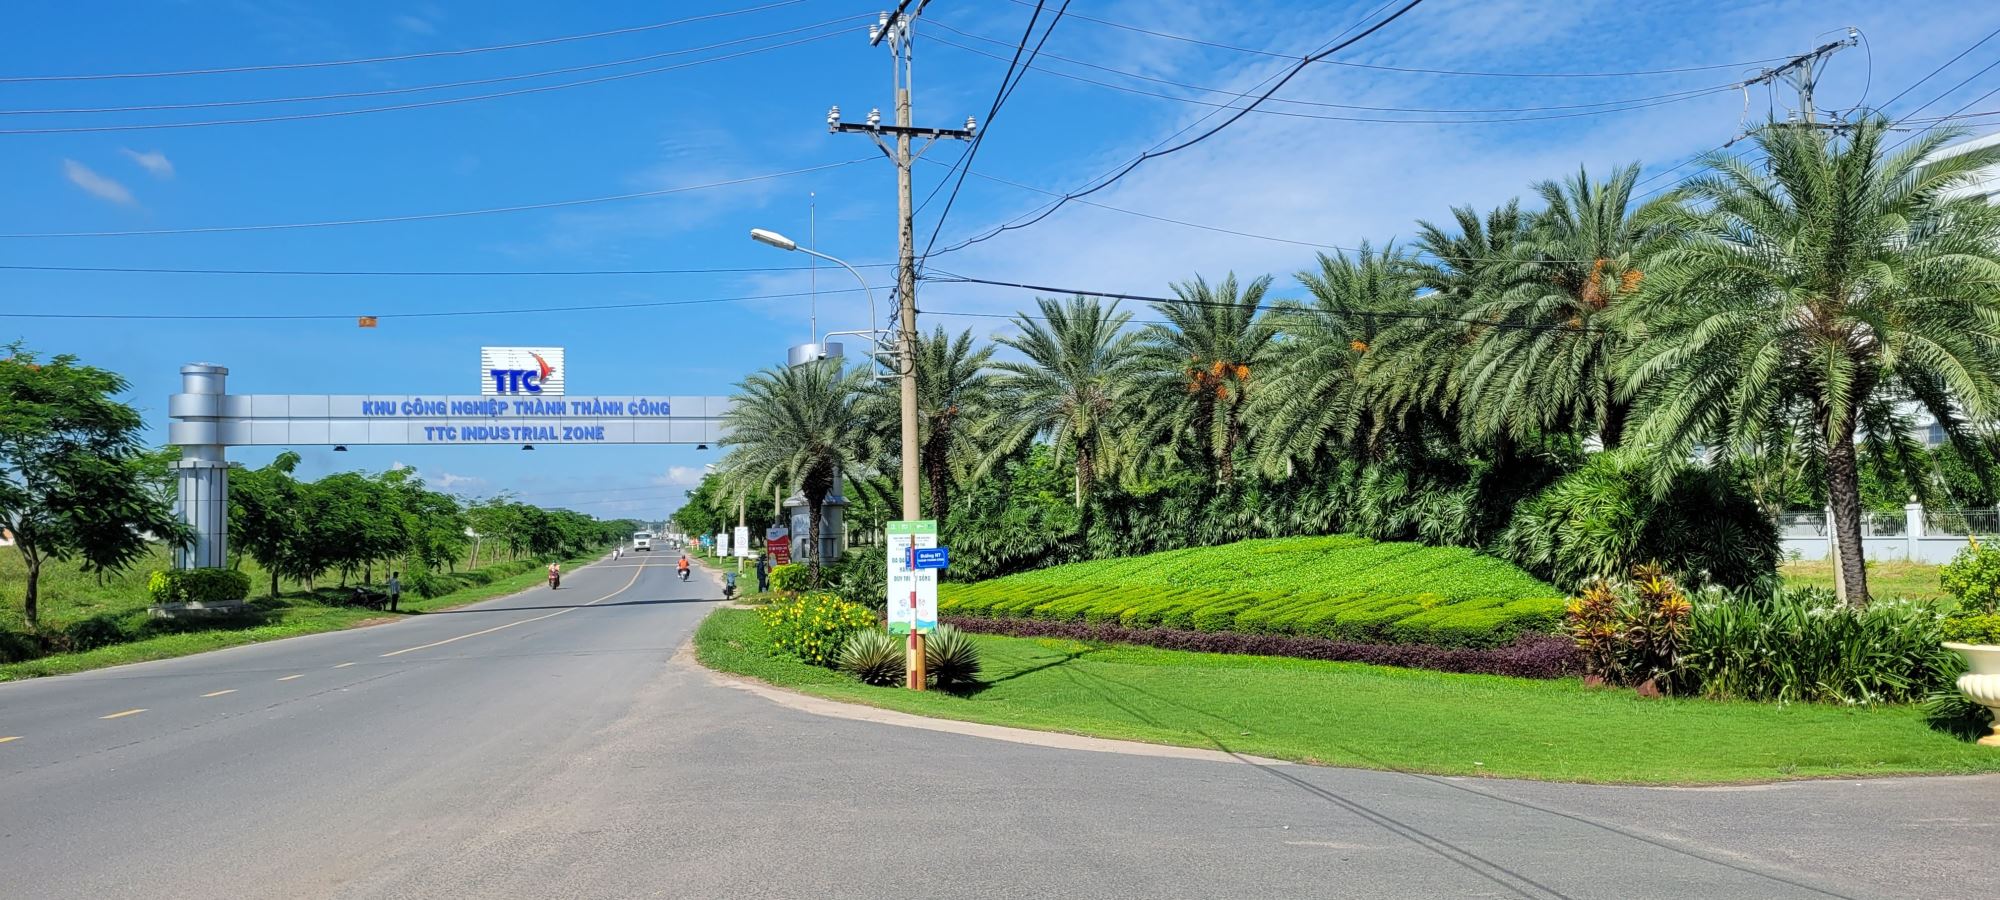 Thu hút lượng lớn nhà đầu tư, KCN Thành Thành Công dự kiến tăng thêm 500 ha-2